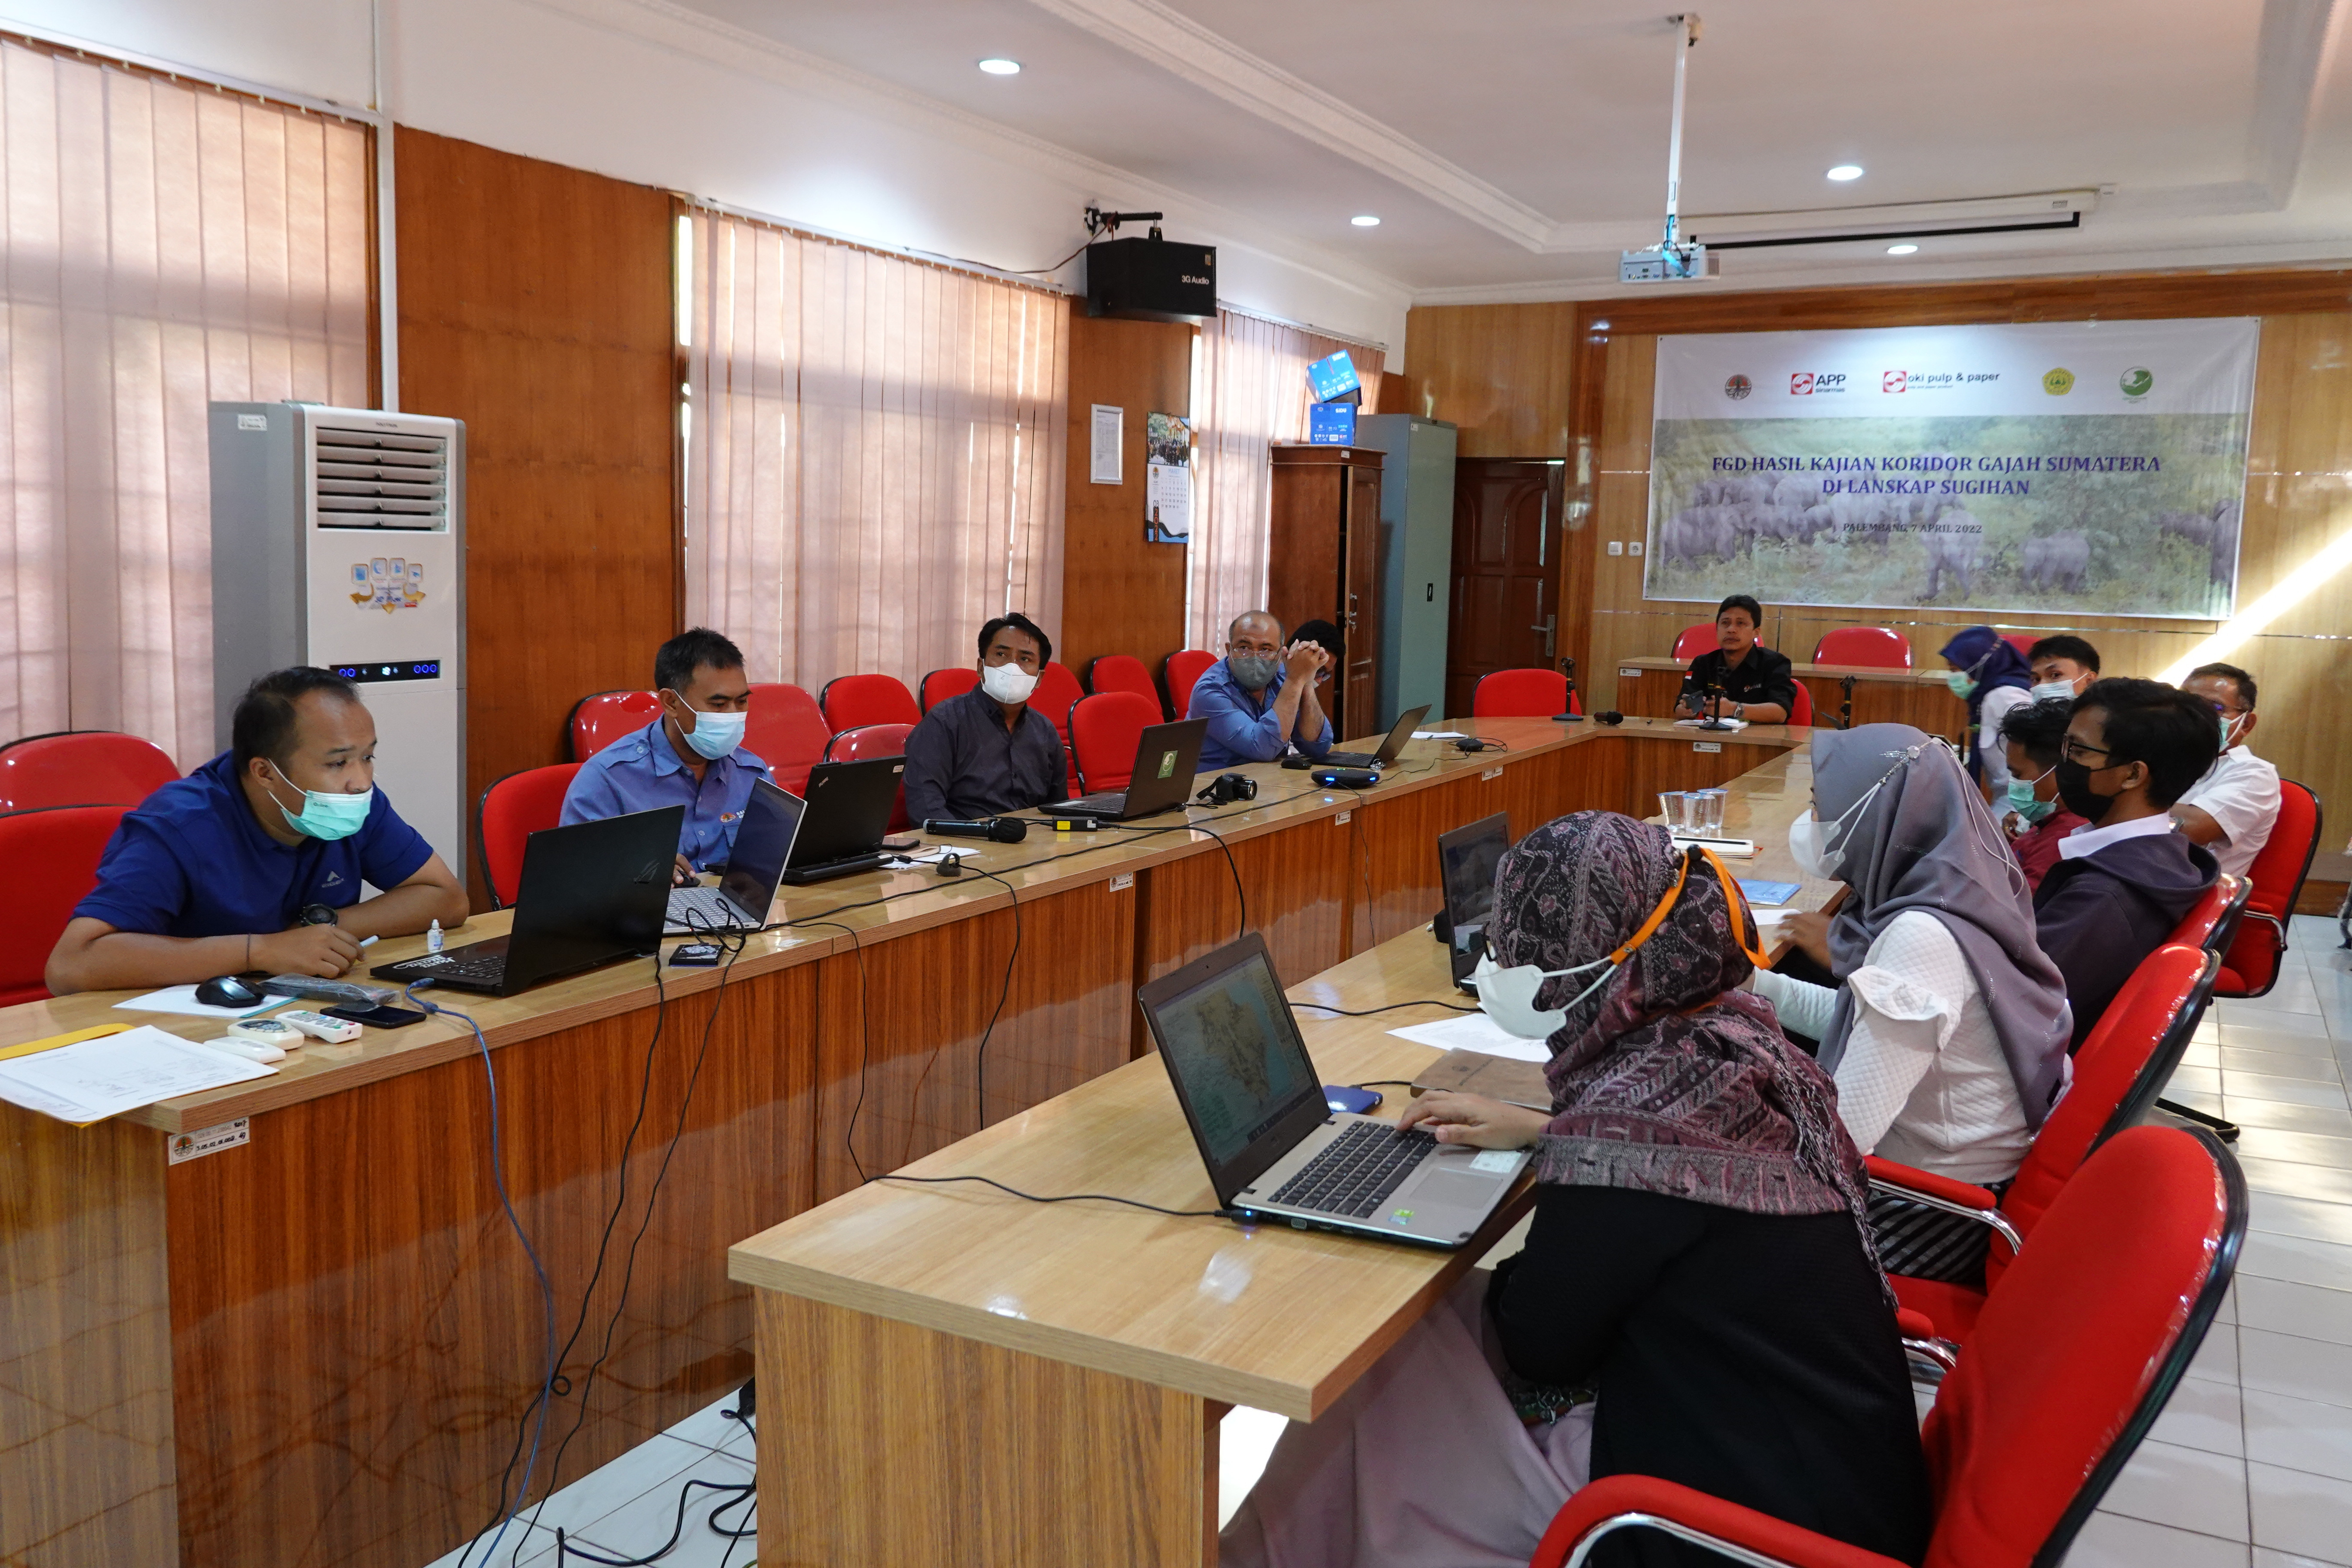 BKSDA Sumsel dan Multipihak Kawal Penyediaan Koridor Gajah Sumatera di Padang Sugihan, OKI, Sumsel